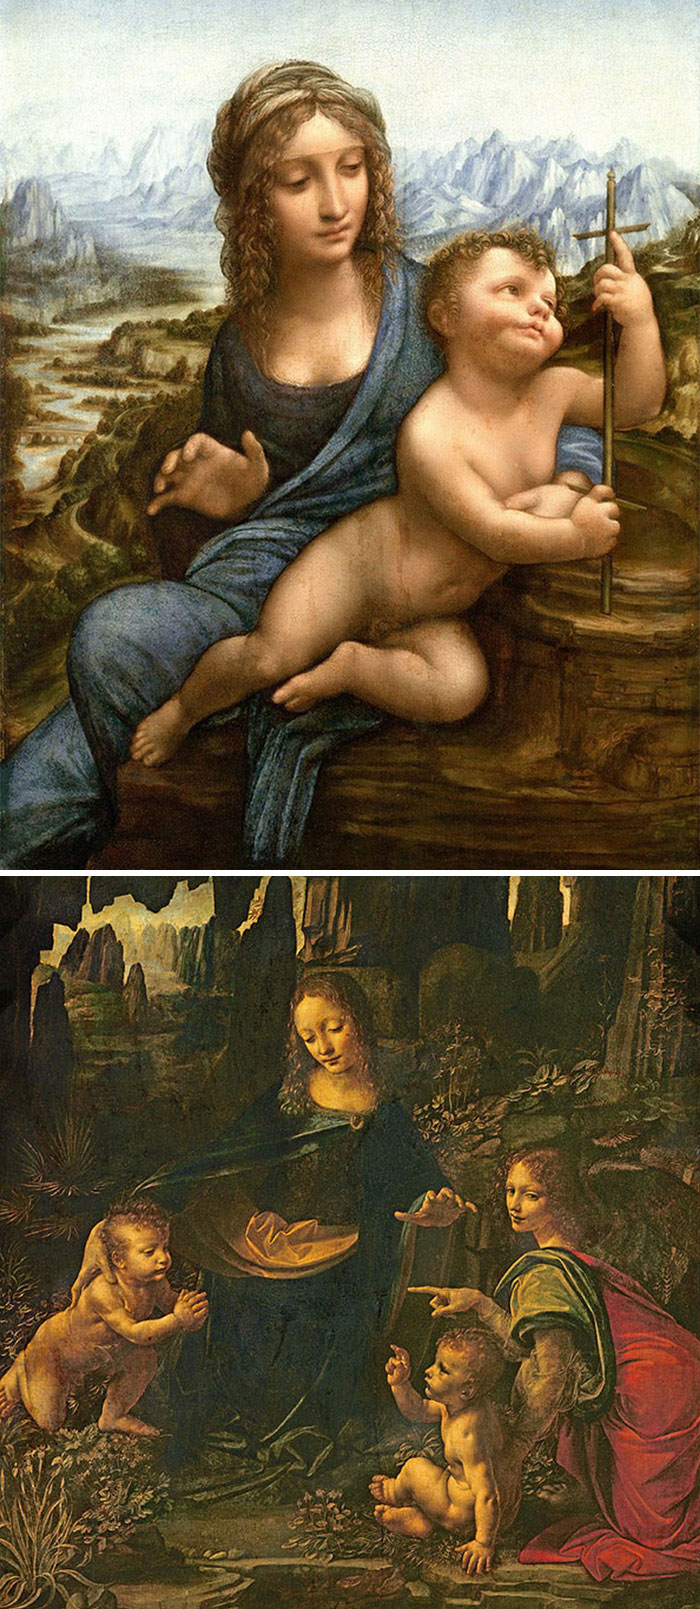 Da Vinci Jak rozpoznać słynnych malarzy? Skuteczny przewodnik po sztuce z lekkim przymrużeniem oka